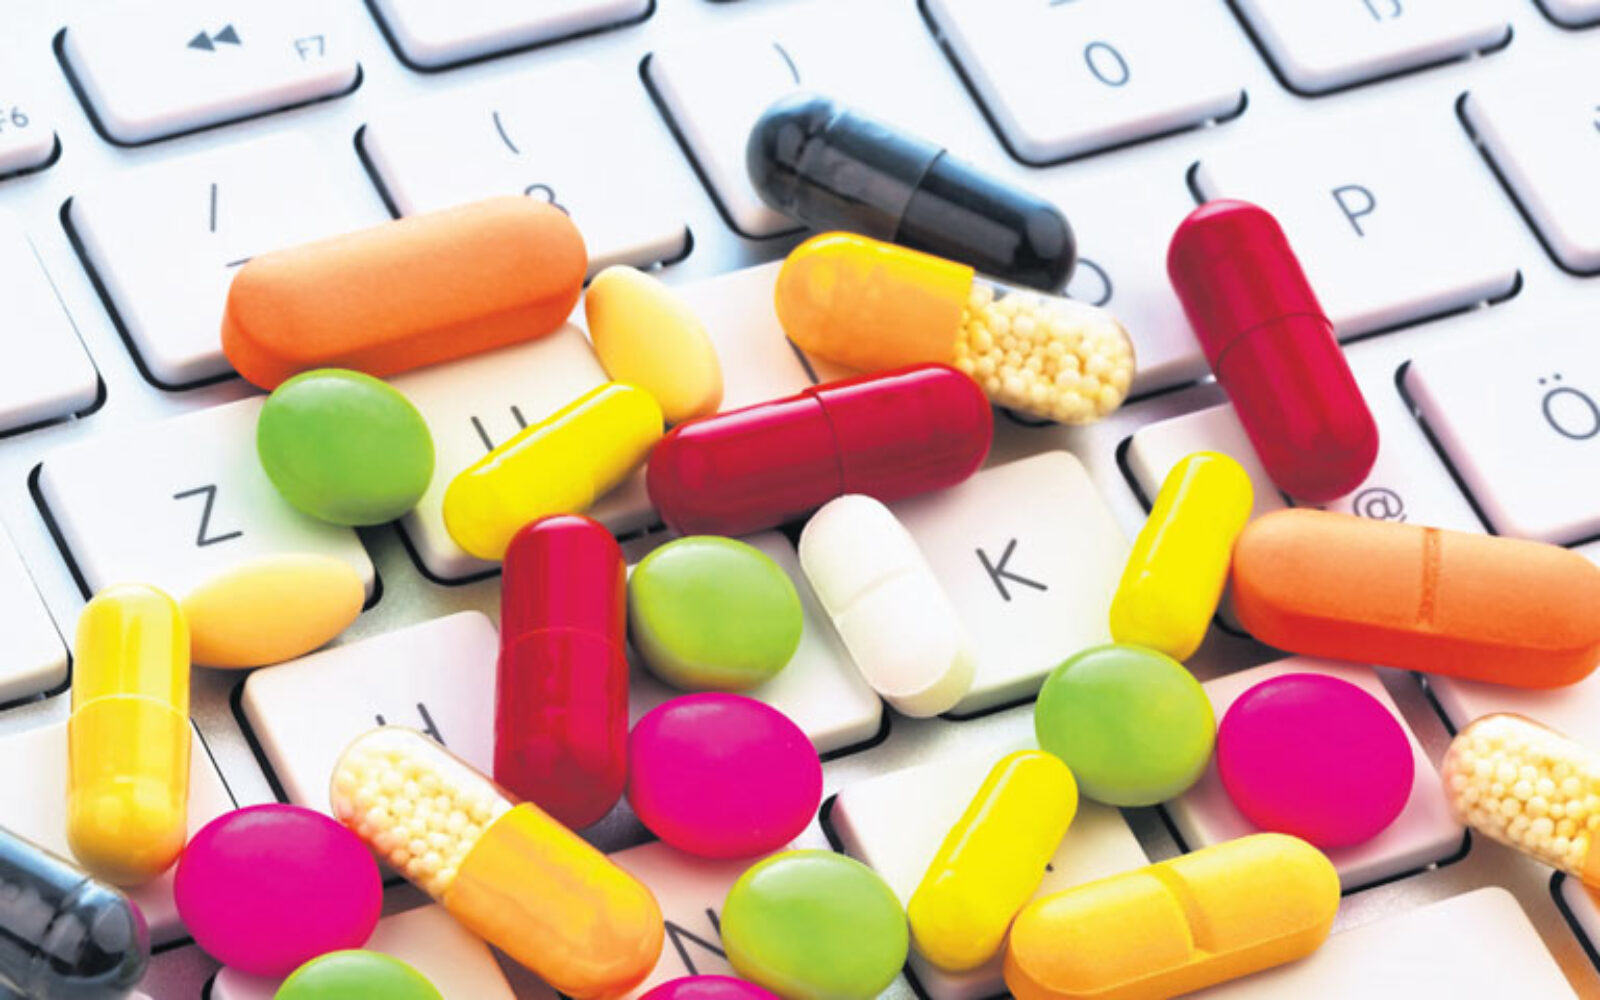 Поиск и заказ лекарств в спб. Лекарства. Таблетка в компьютере. Интернет лекарства. Интернет торговля лекарствами.